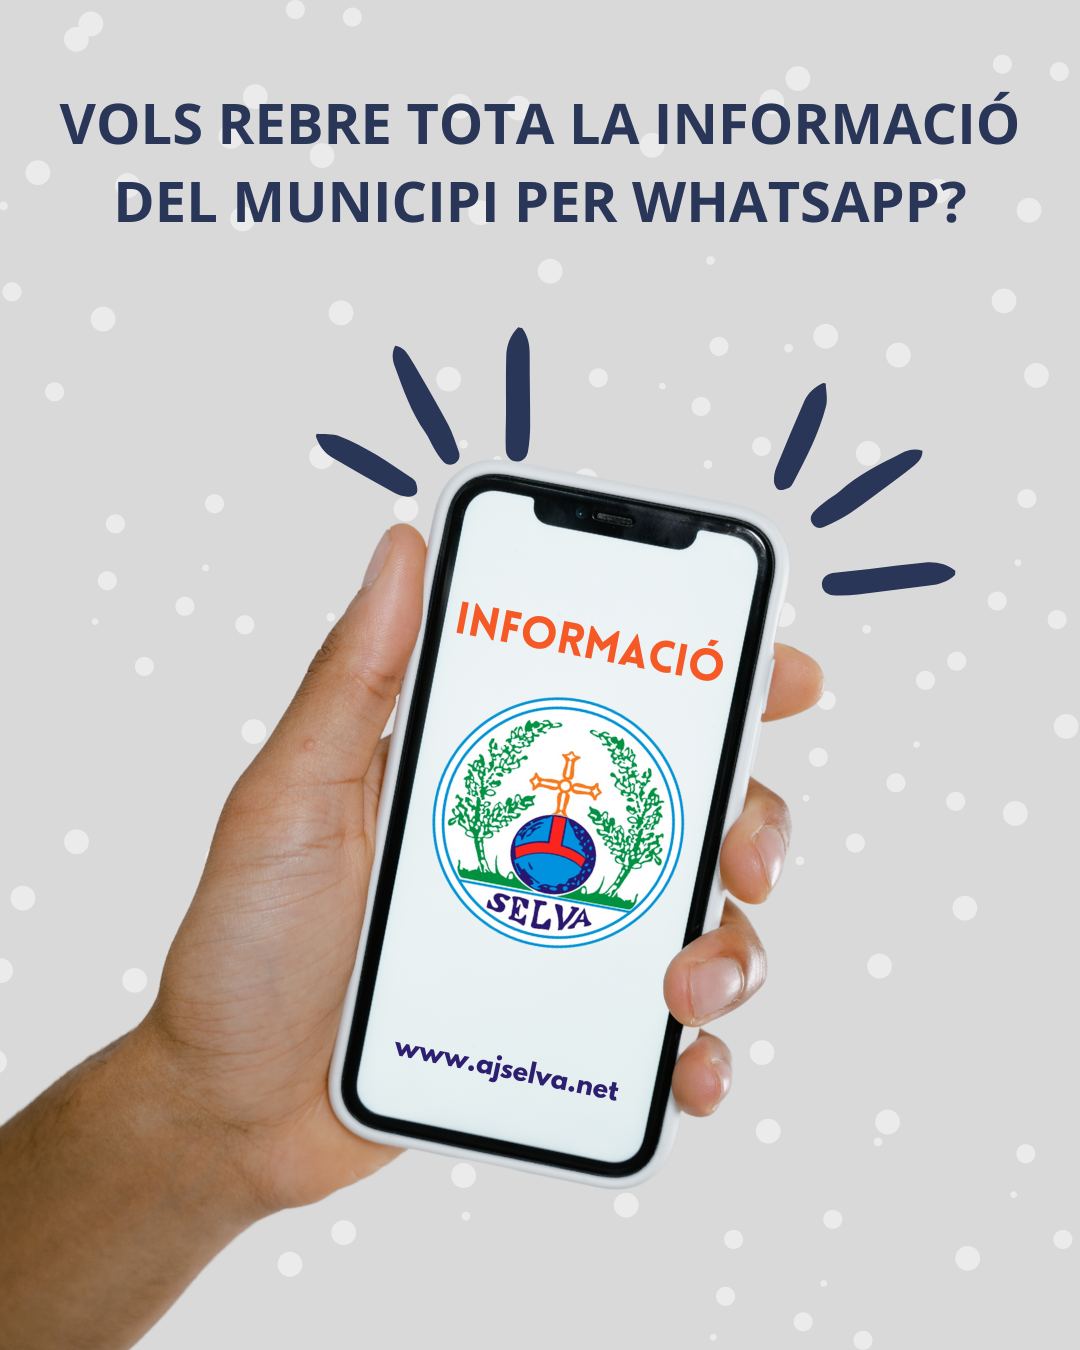 Vols rebre tota la informació del municipi per WhatsApp?